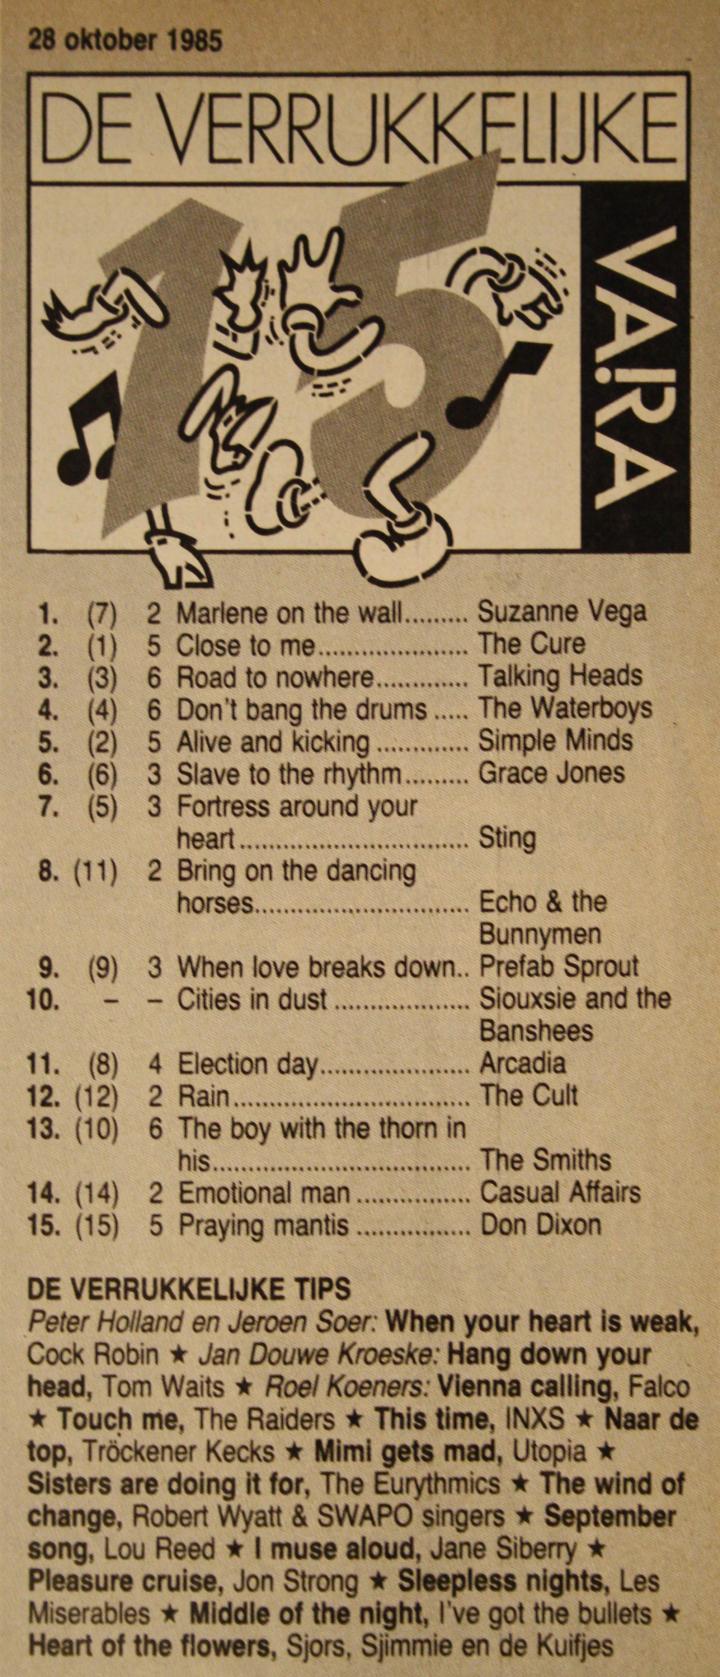 De Verrukkelijke 85 van 29 oktober 1985, afgedrukt in de VARA-gids